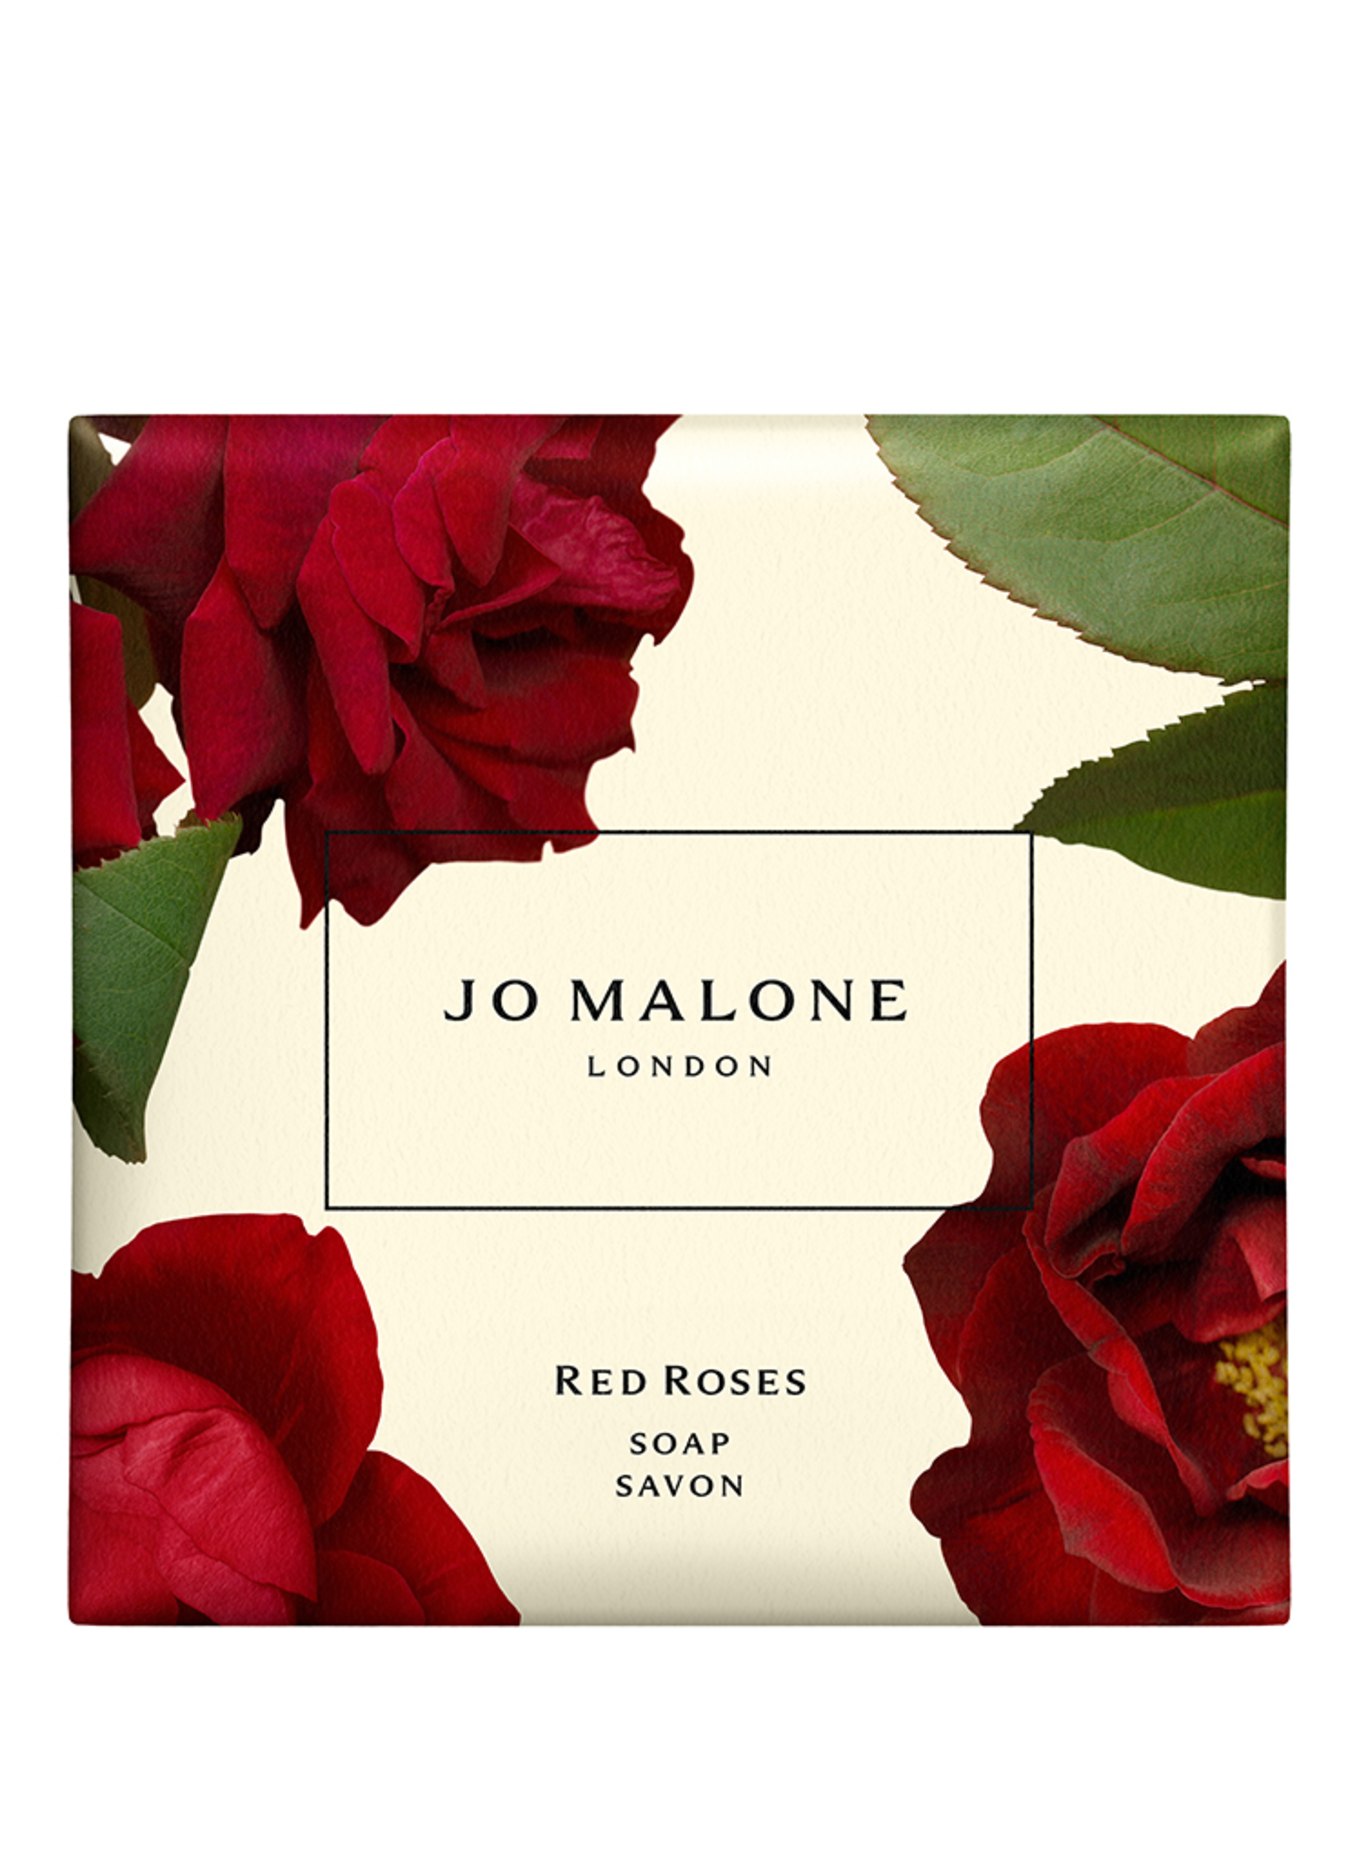 JO MALONE LONDON RED ROSES SOAP (Obrázek 1)